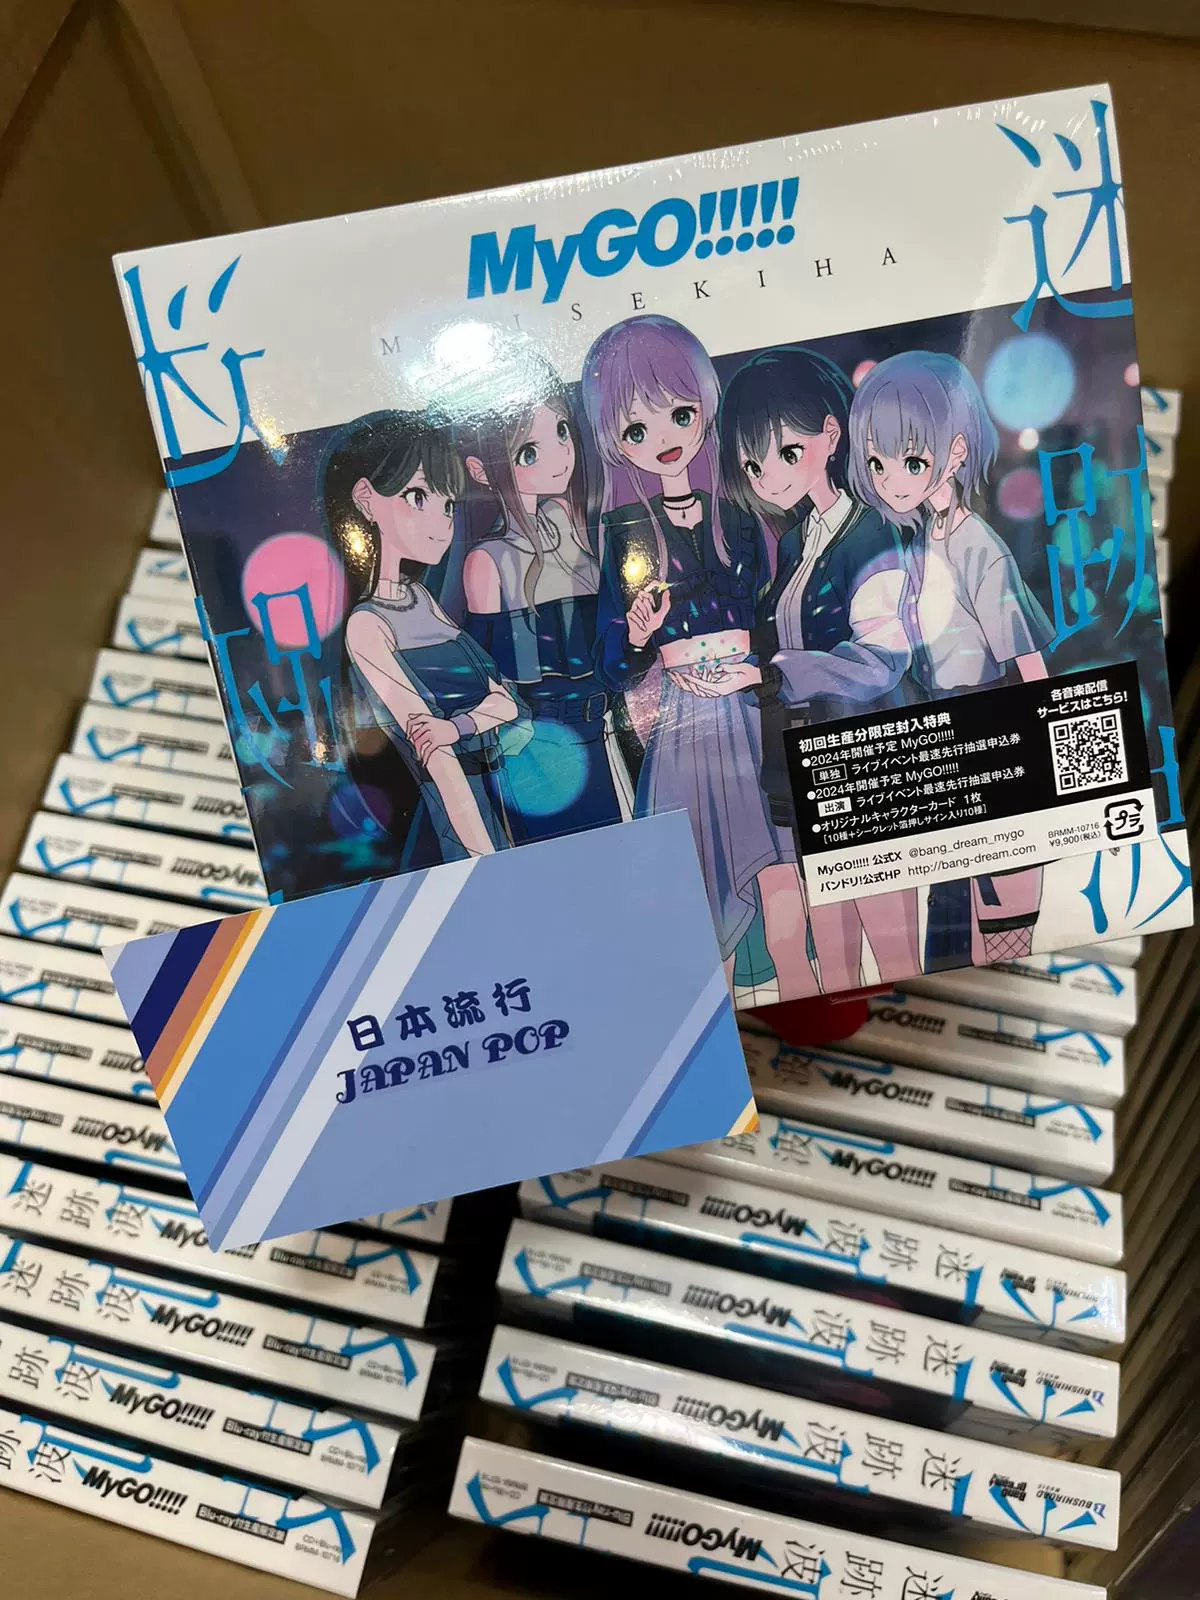 Bang Dream MyGO!!!!! 1st アルバム迷跡波BD付生産限定盤小卡-Taobao